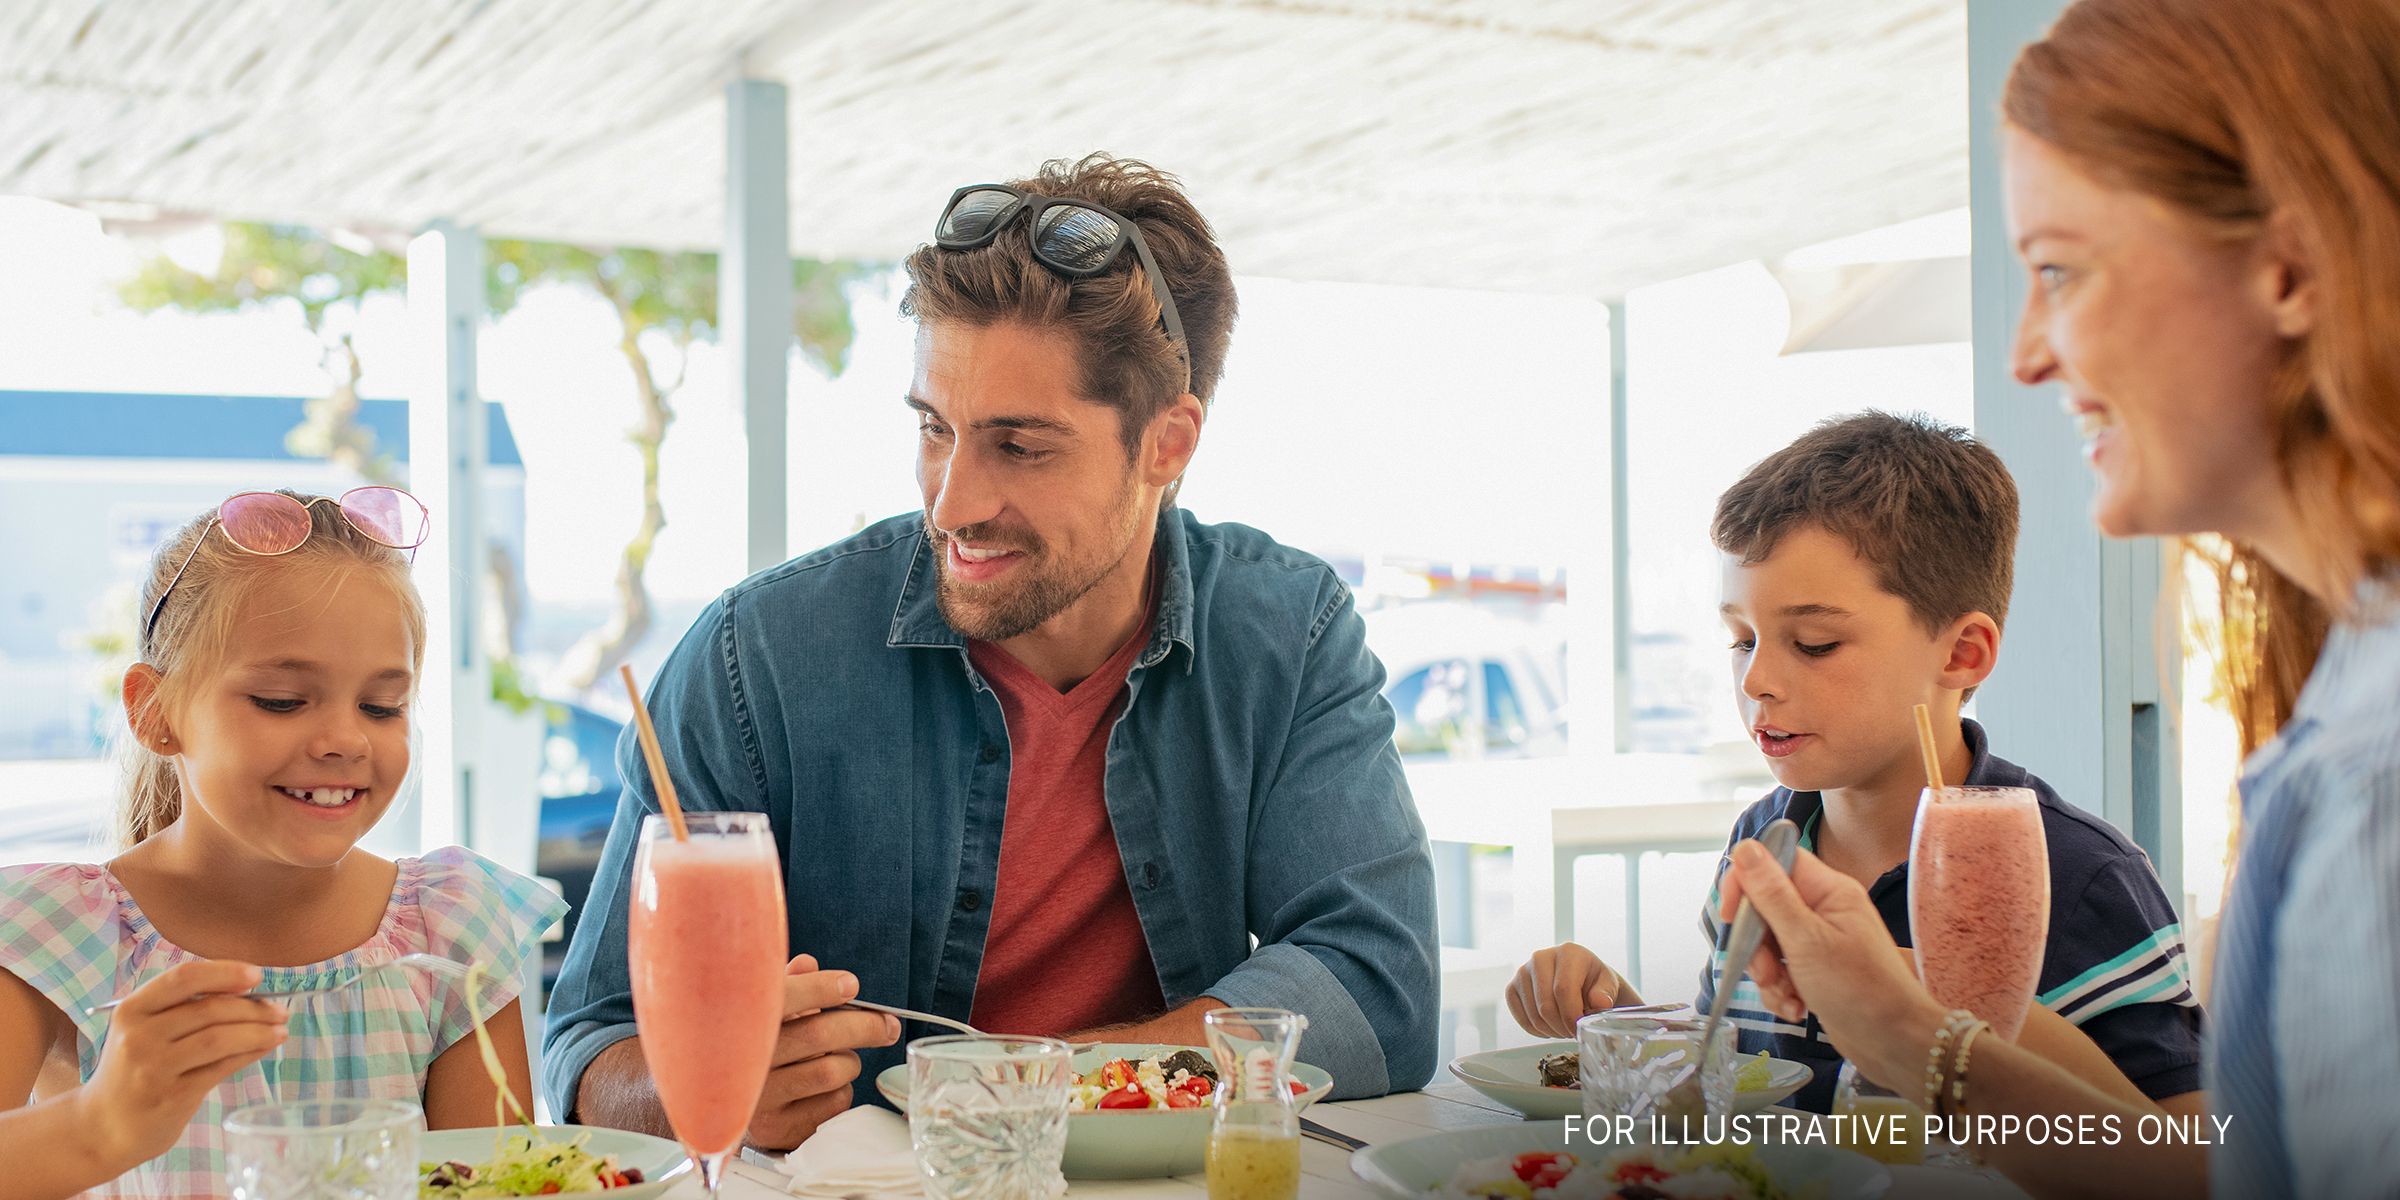 Eine Familie beim Essen in einem Restaurant | Quelle: Shutterstock